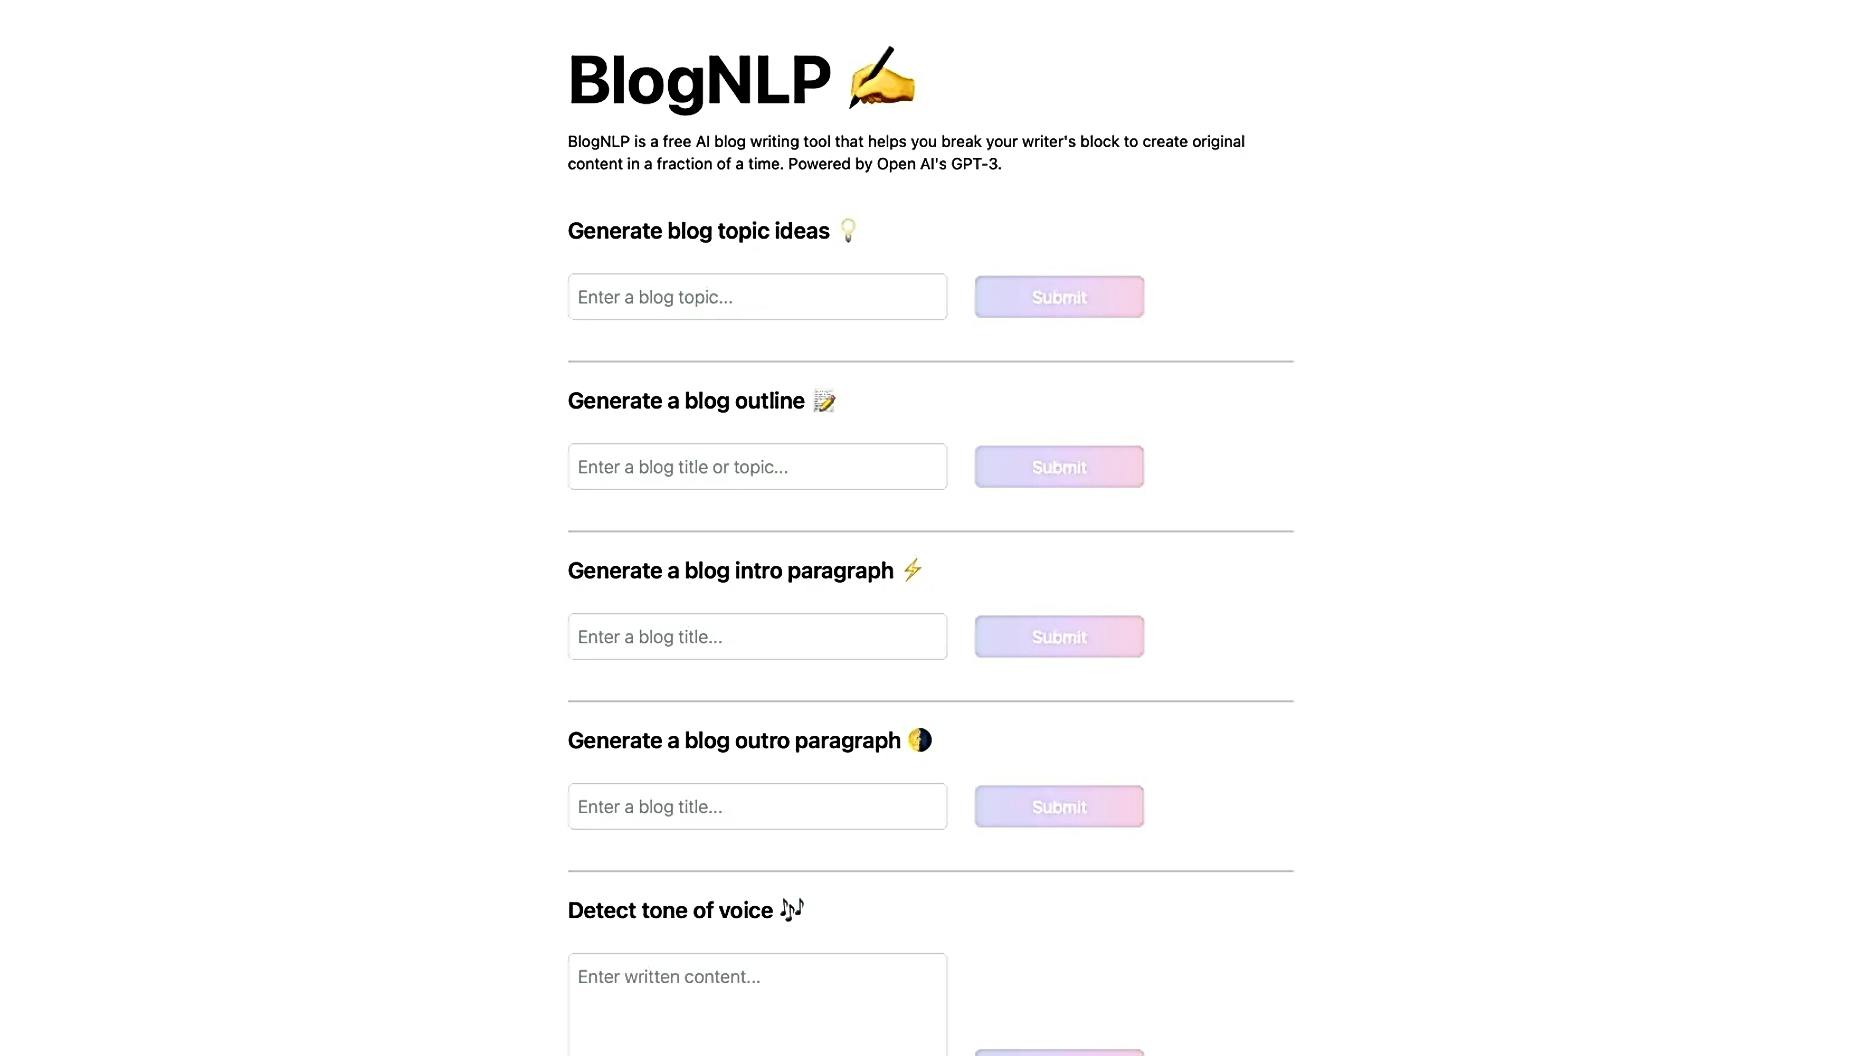 BlogNLP featured